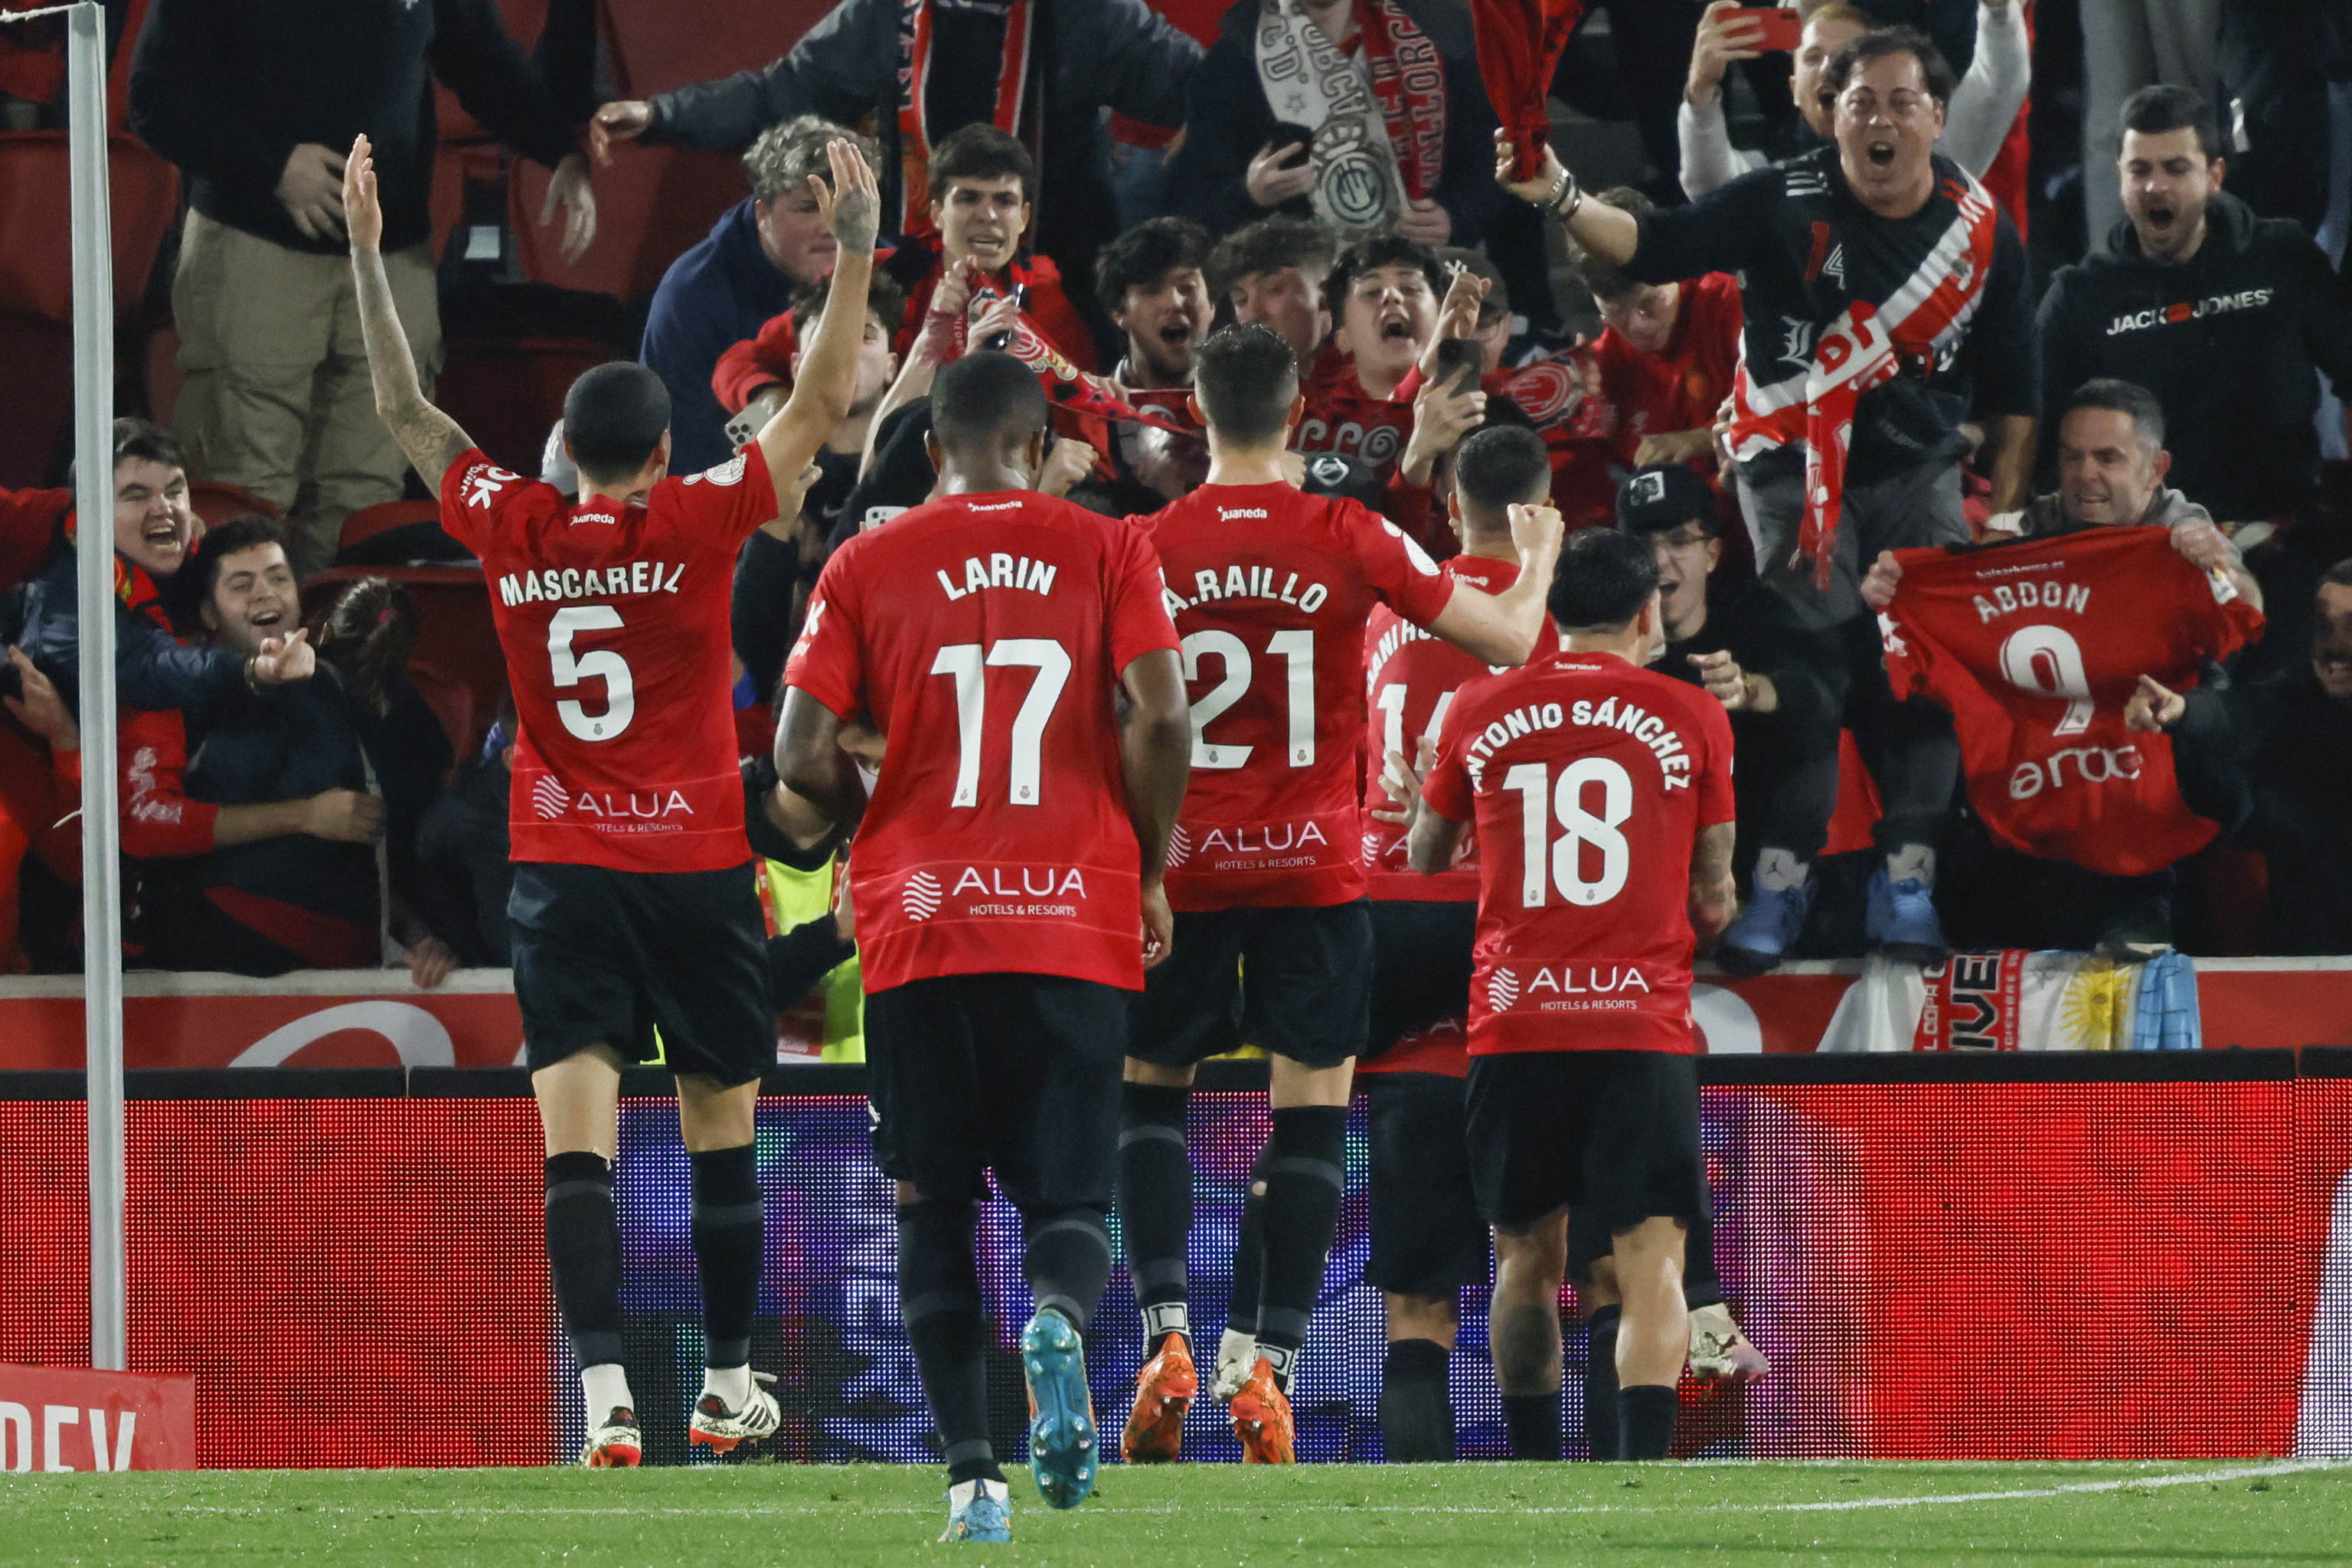 El Mallorca celebra uno de los goles.